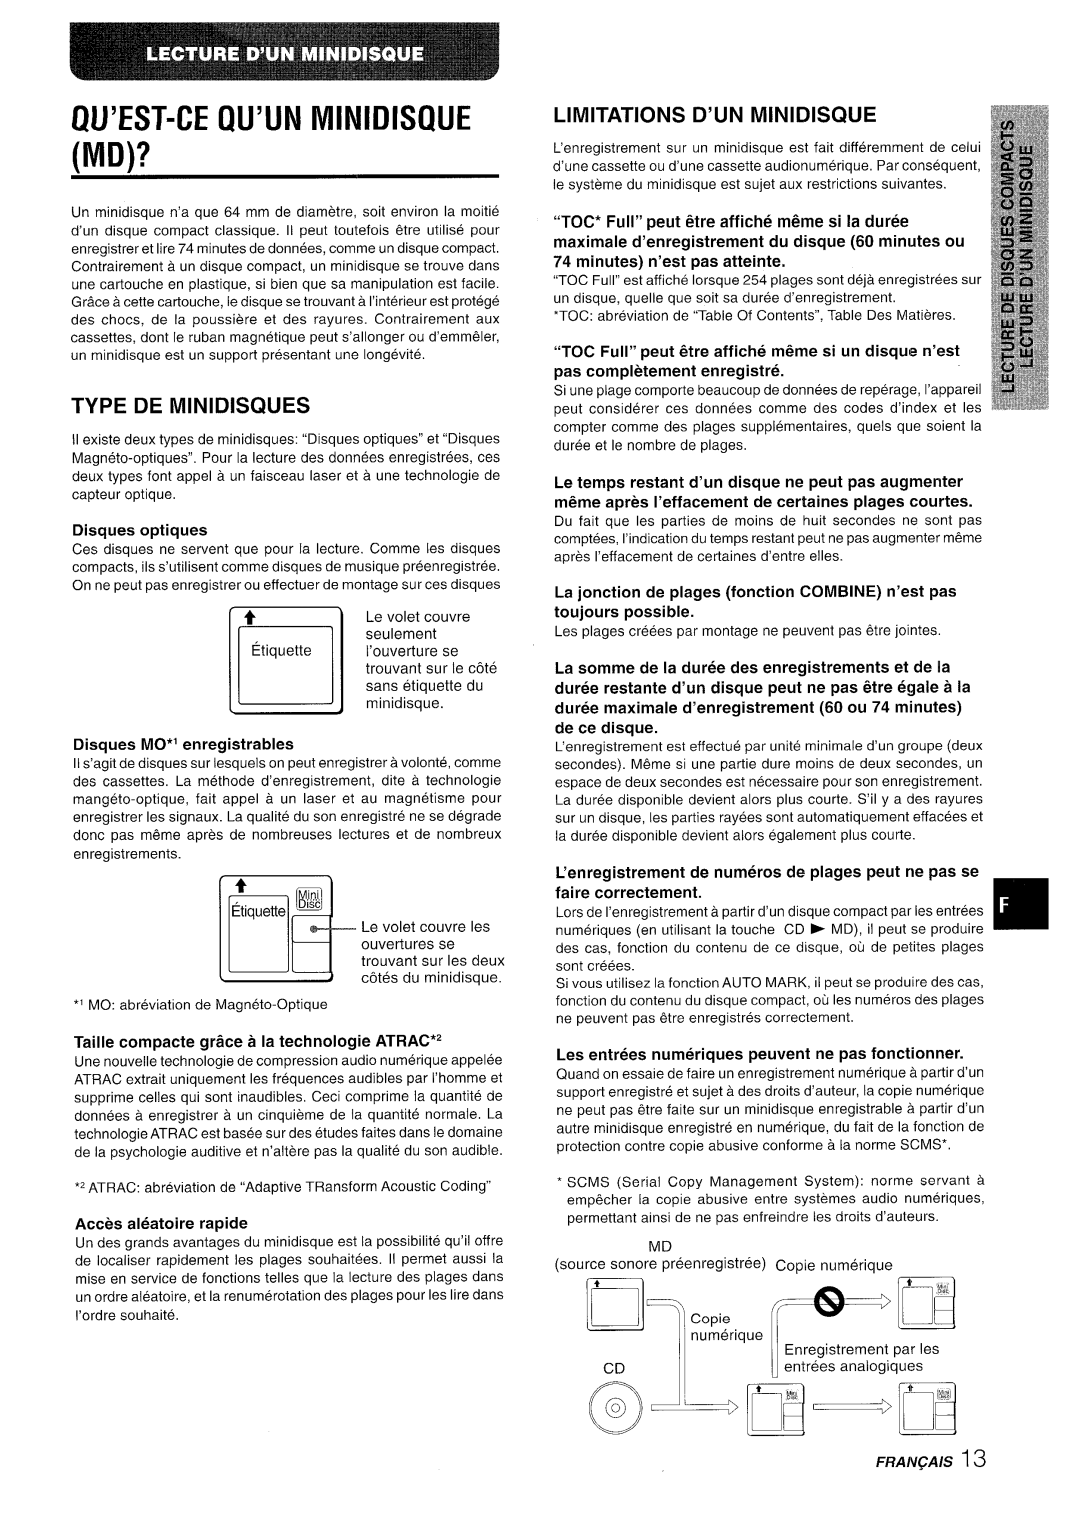 Aiwa XR-MD95 manual Qu’Est-Ce Qu’Un Minidisque Md?, Type De Minidisques, Limitations D’Un Minidisql E, Disques optiques 